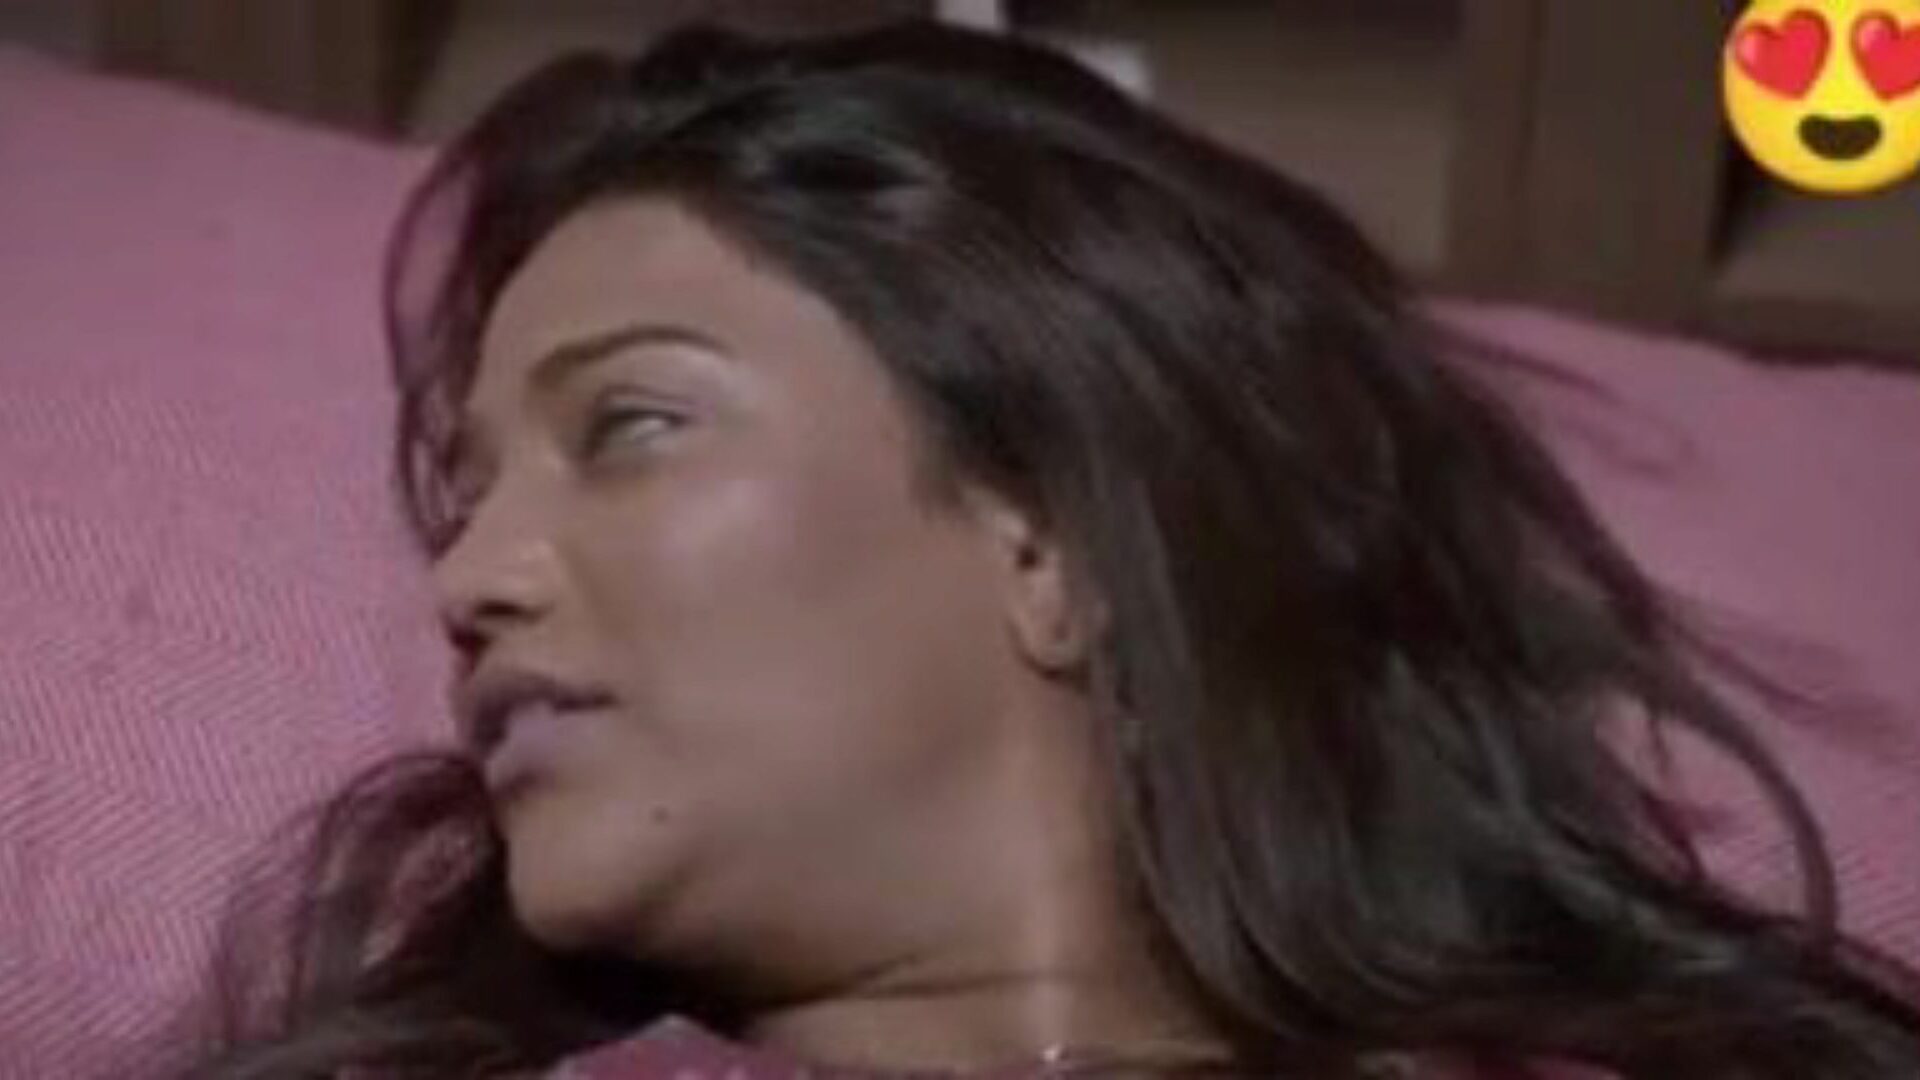 double dhamaka saree sex, porno indien gratuit da: xhamster regarder double dhamaka saree sex movie sur xhamster, la ressource Web massive de tube de rapports sexuels avec des tonnes de scènes de films pornographiques indiens gratuits pour tous xxx et hindi